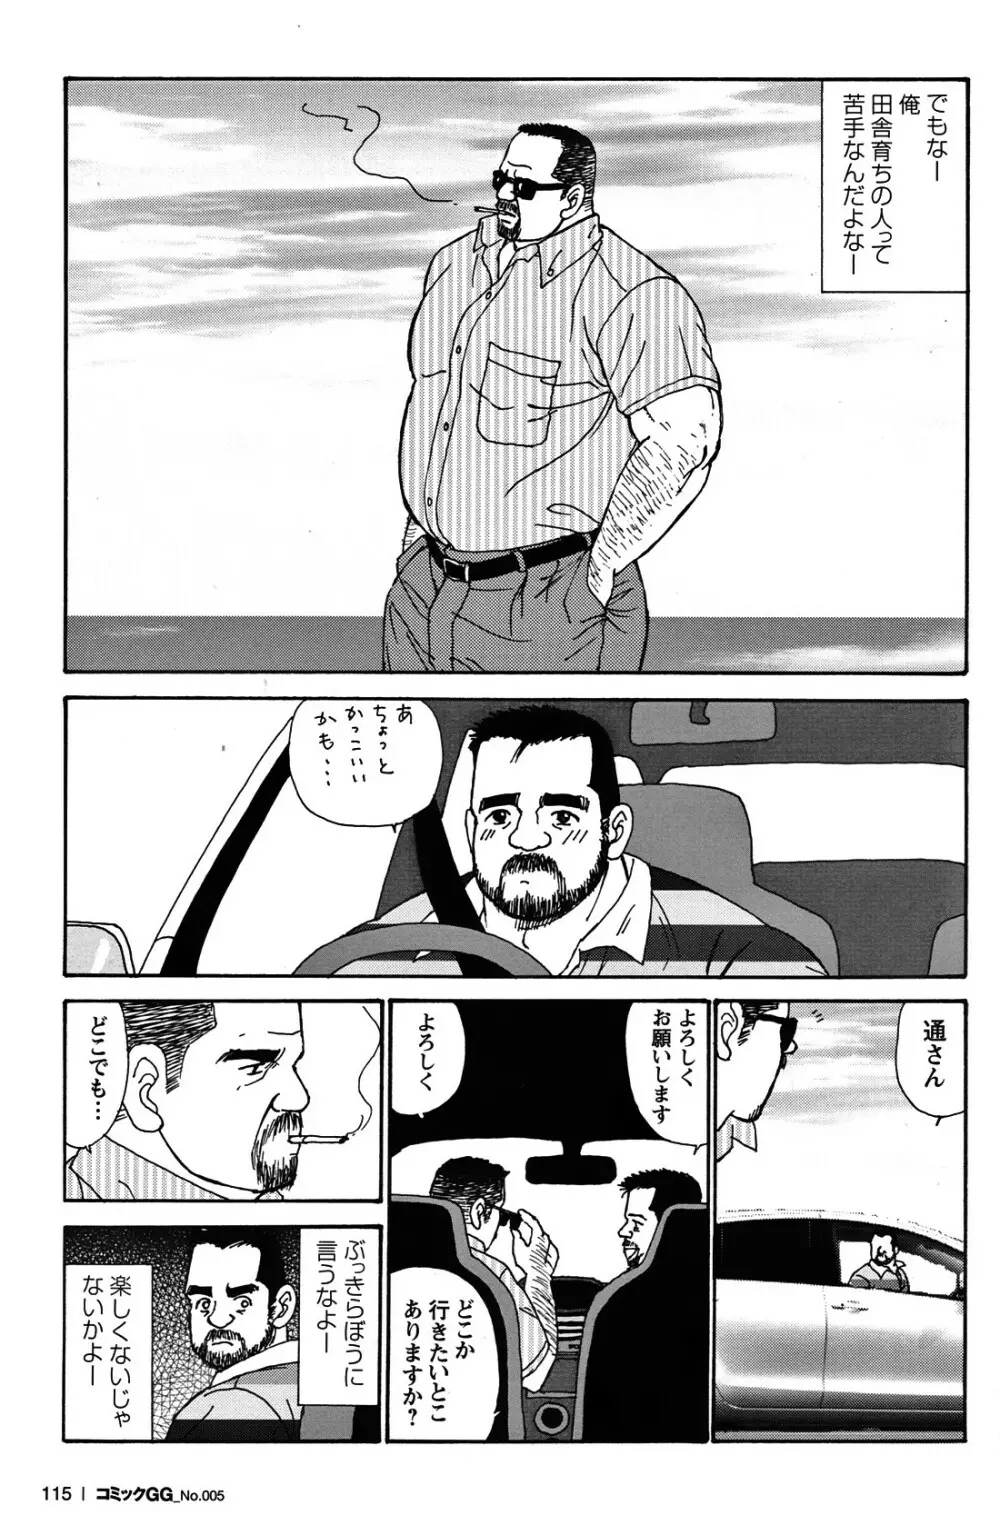 Comic G-men Gaho No.05 106ページ